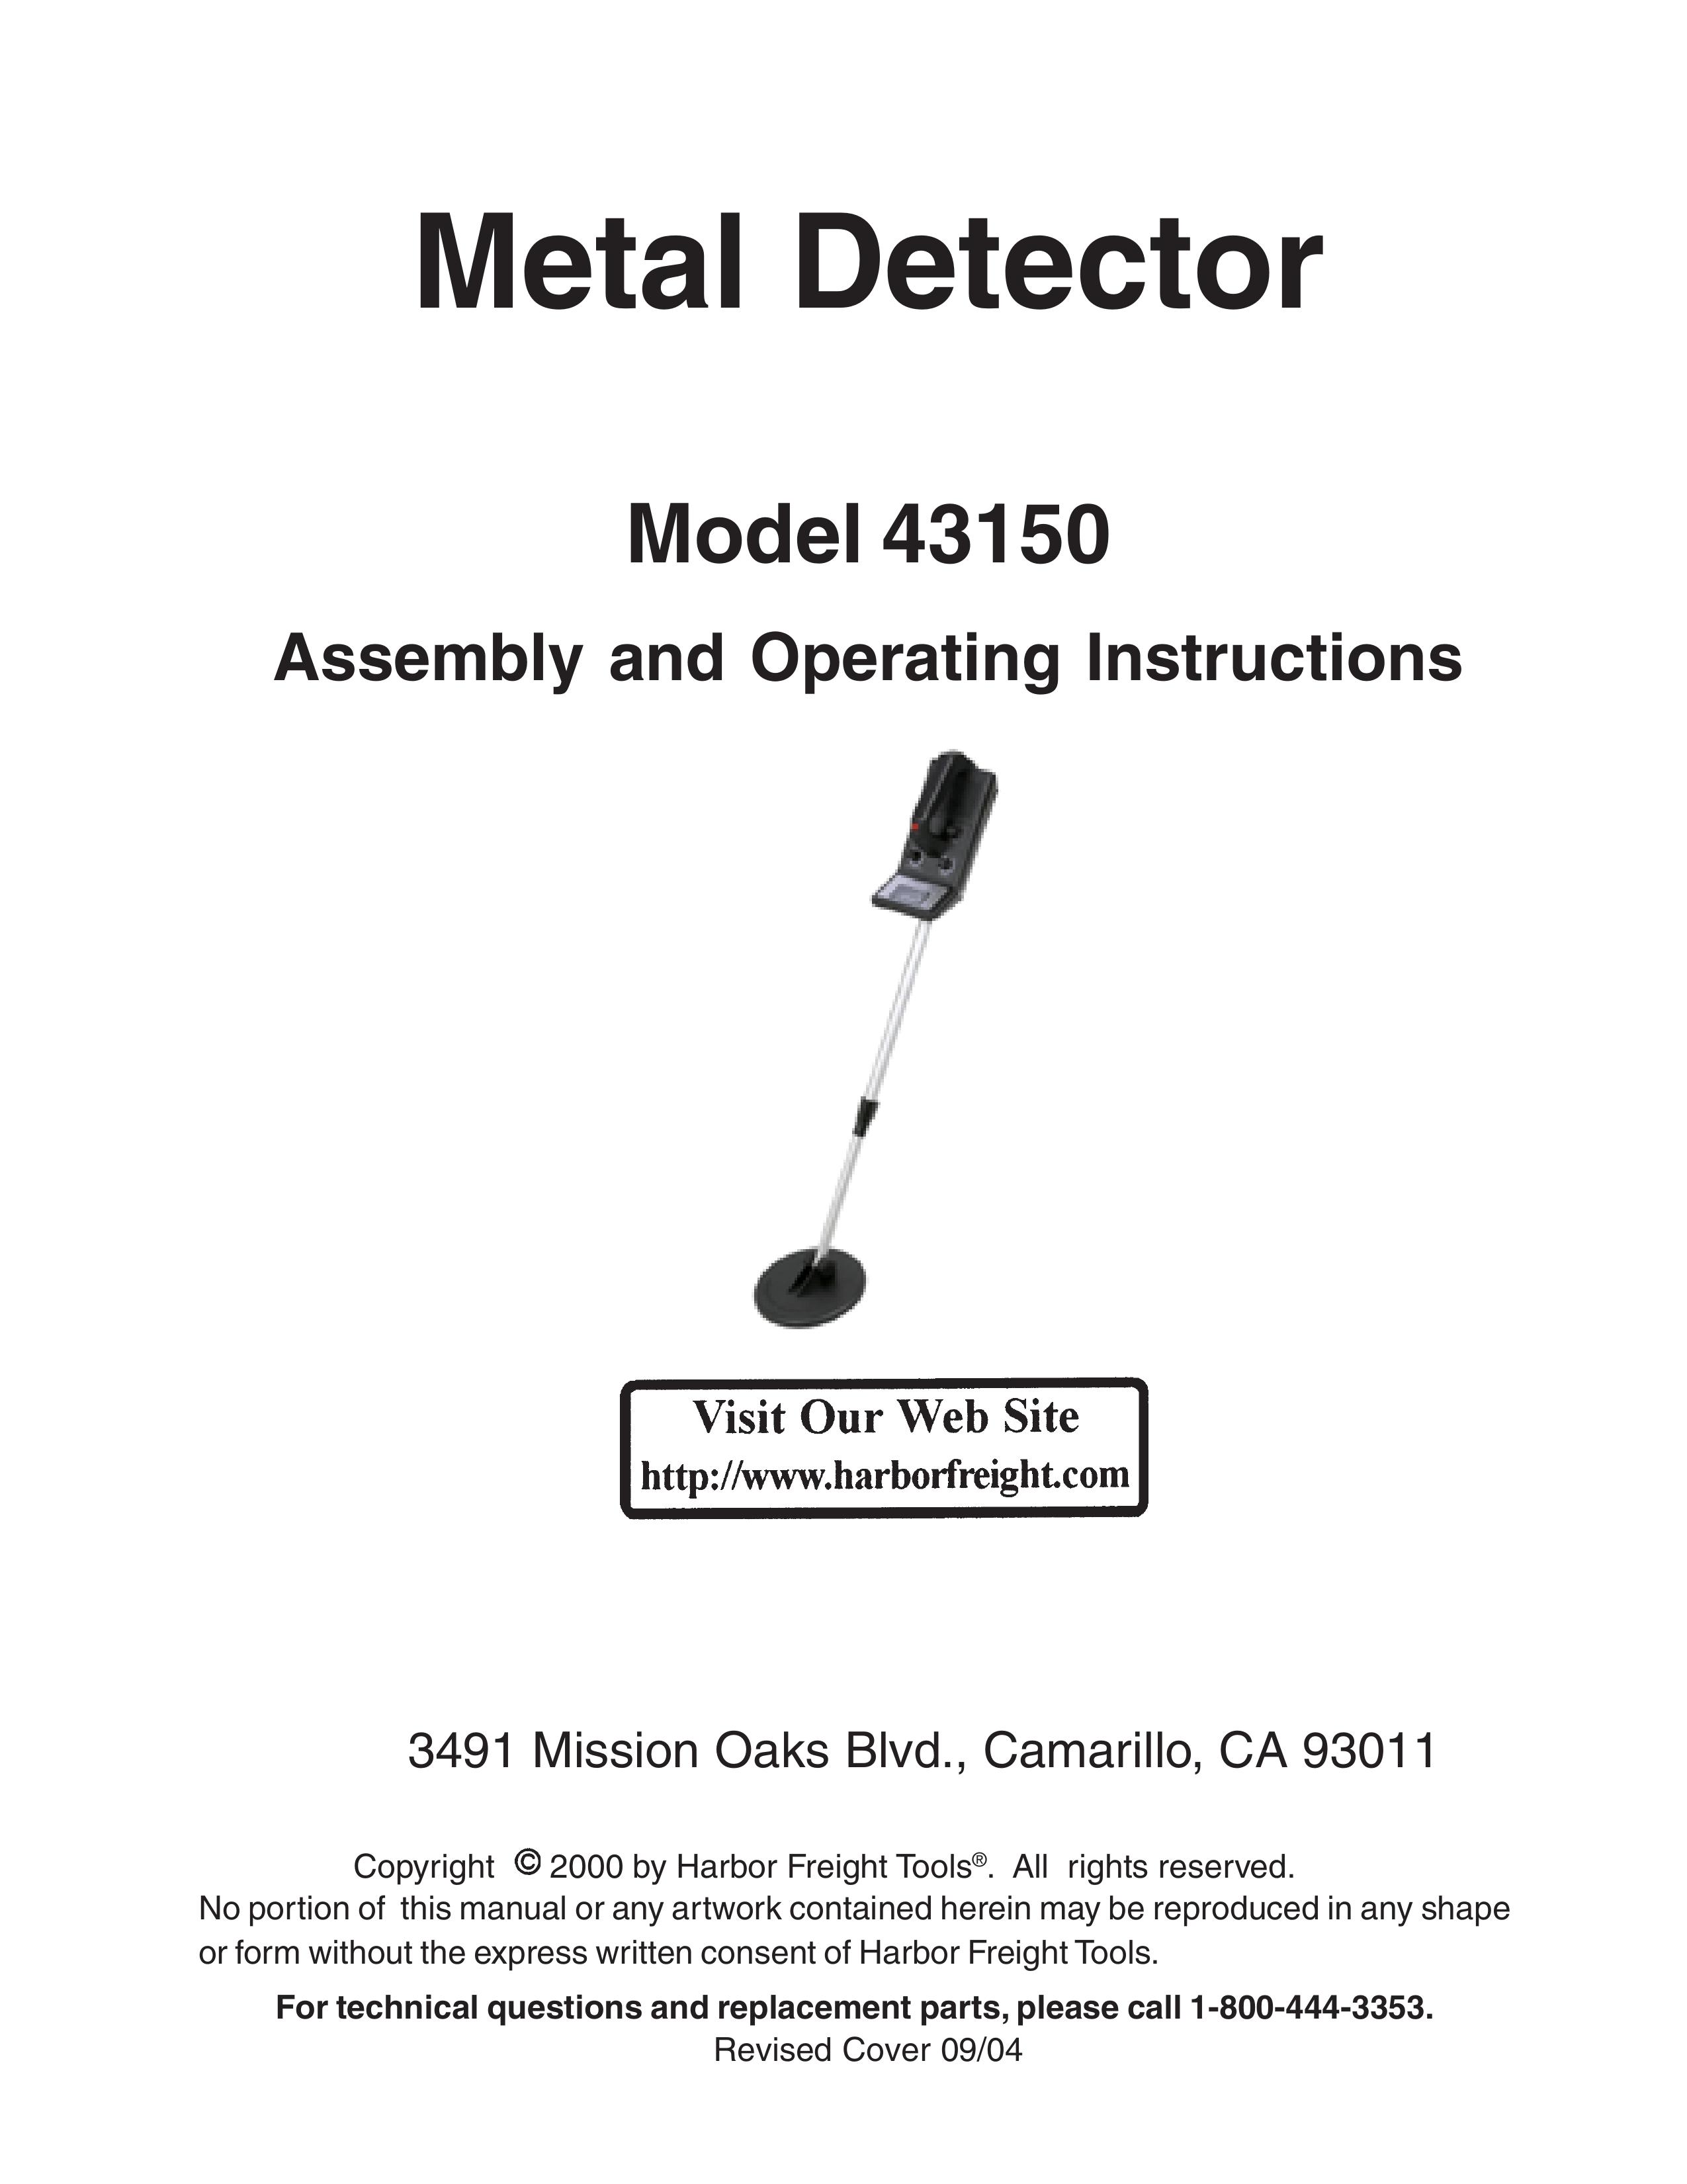 Harbor Freight Tools 43150 Metal Detector User Manual